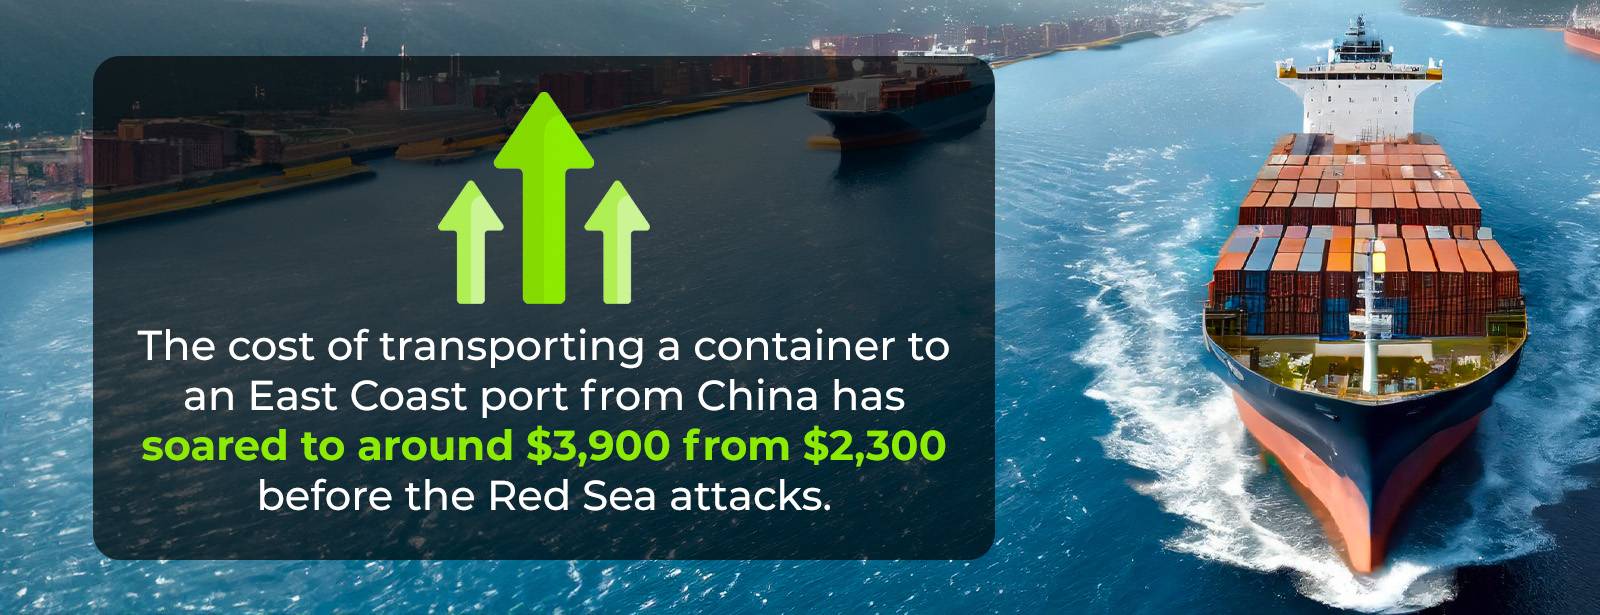 Kosten voor het vervoeren van een container via de Rode Zee stijgen verdubbeld.